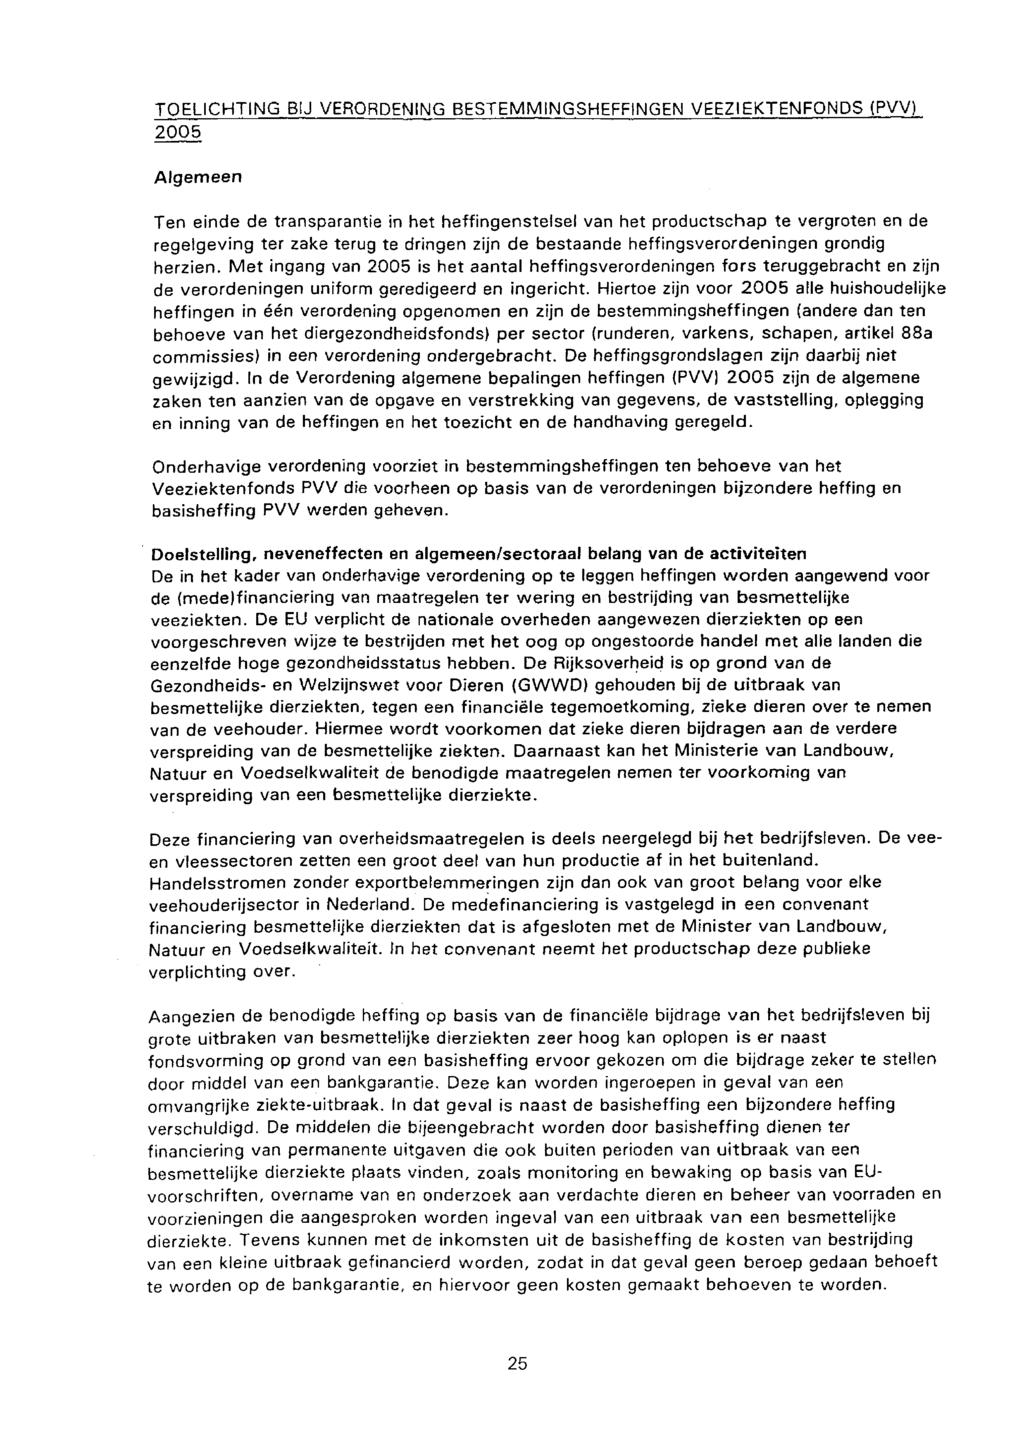 TOELICHTING BIJ VERORDENING BESTEMMINGCHEFFINGEN VEEZIEKTENFONDS (PVV) 2005 Algemeen Ten einde de transparantie in het heffingenstelsel van het productschap te vergroten en de regelgeving ter zake